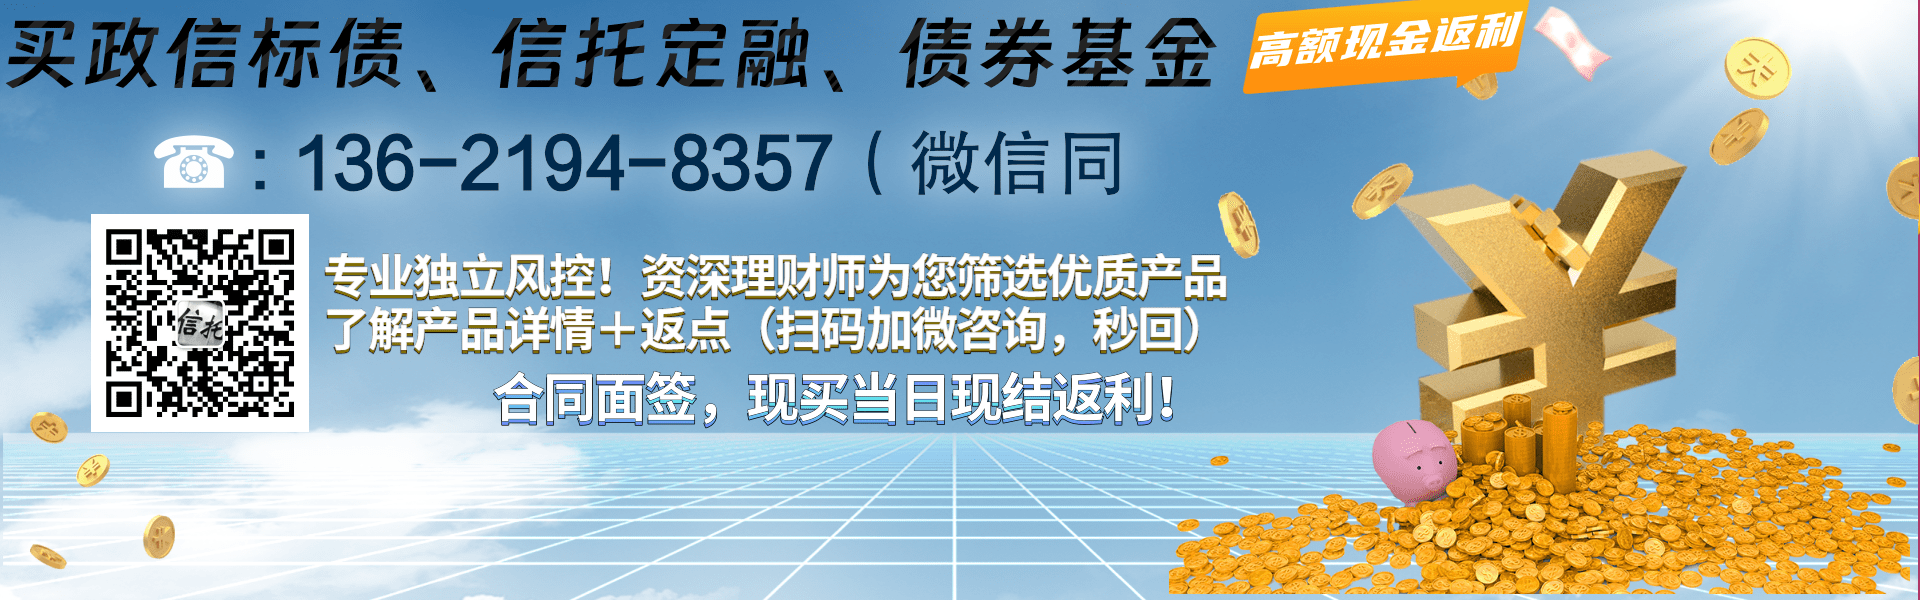 重庆市万盛经开区城市开发投资2023年债权资产政府债定融